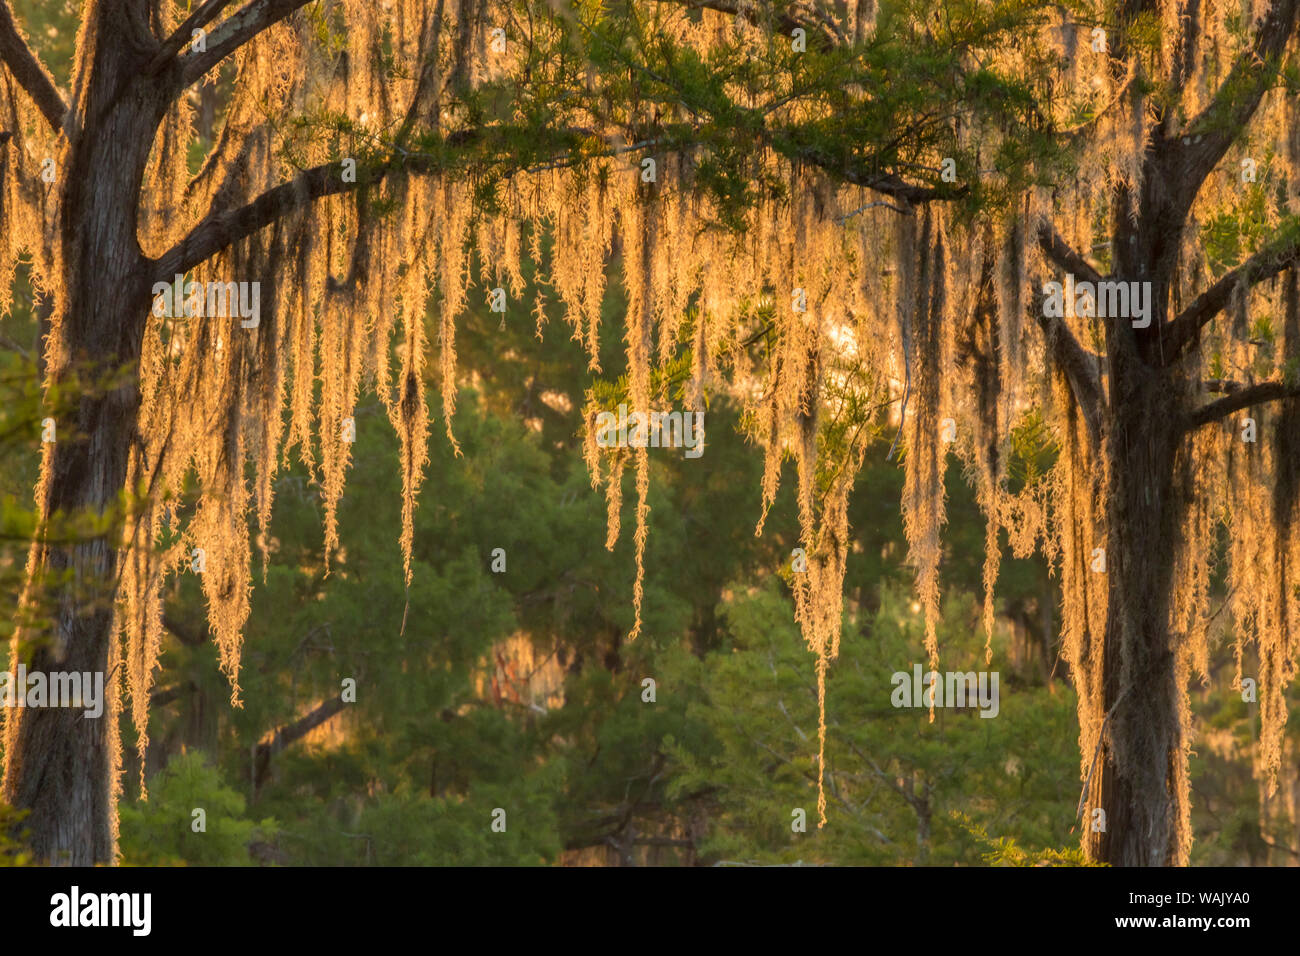 USA, Louisiana, Atchafalaya National Wildlife Refuge. Sunrise on swamp. Credit as: Cathy and Gordon Illg / Jaynes Gallery / DanitaDelimont.com Stock Photo